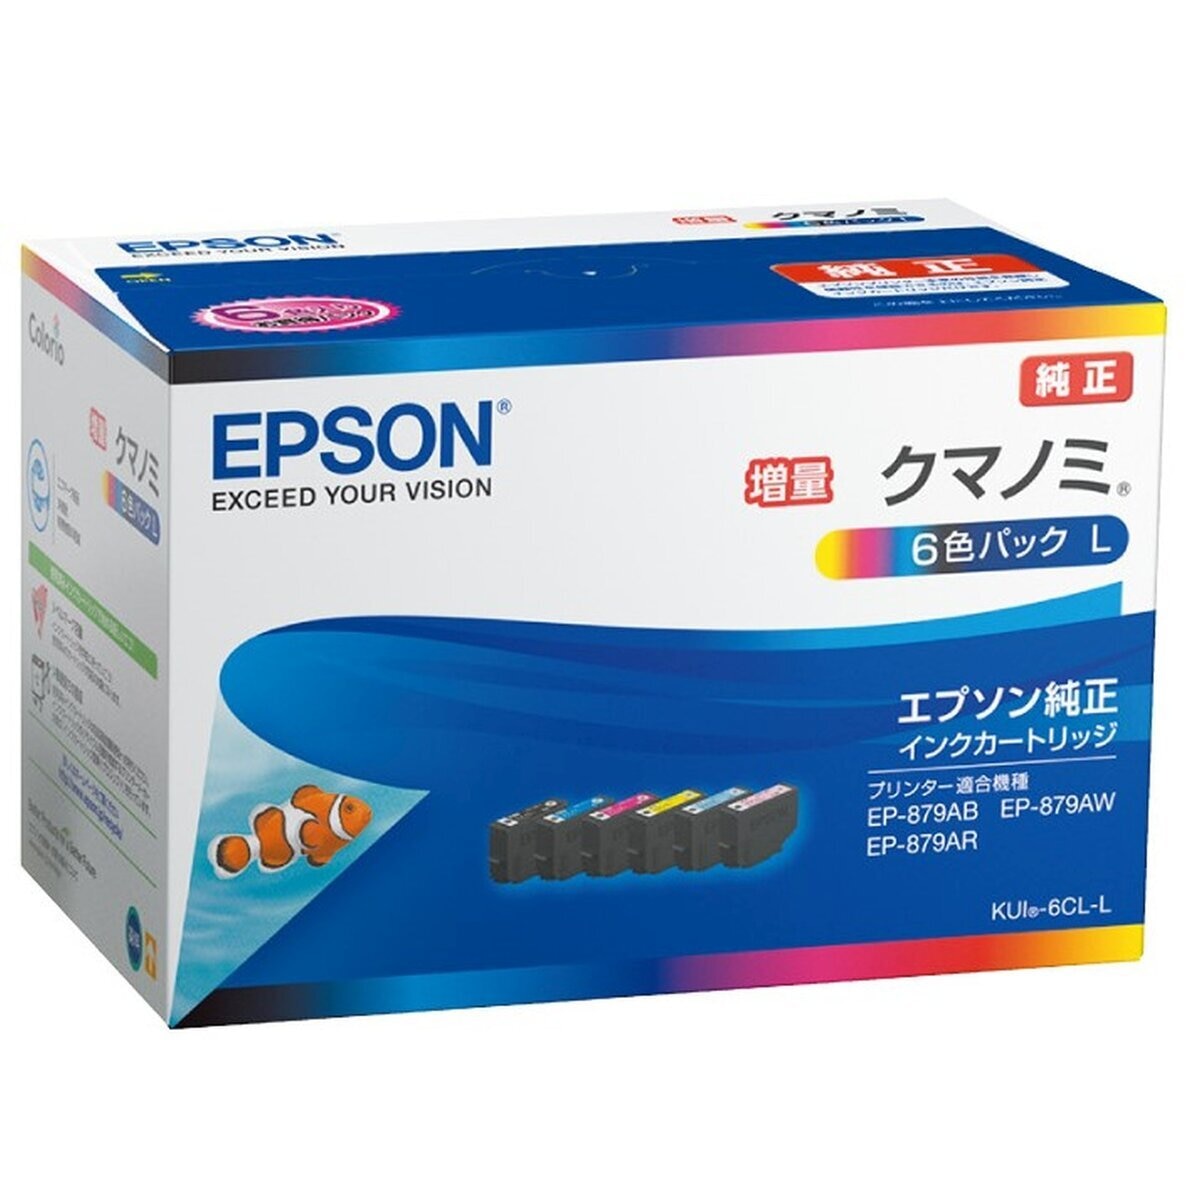 海外店舗 エプソン インクカートリッジ/グレー(350ml) SC26GY35 プリンター・FAX用インク